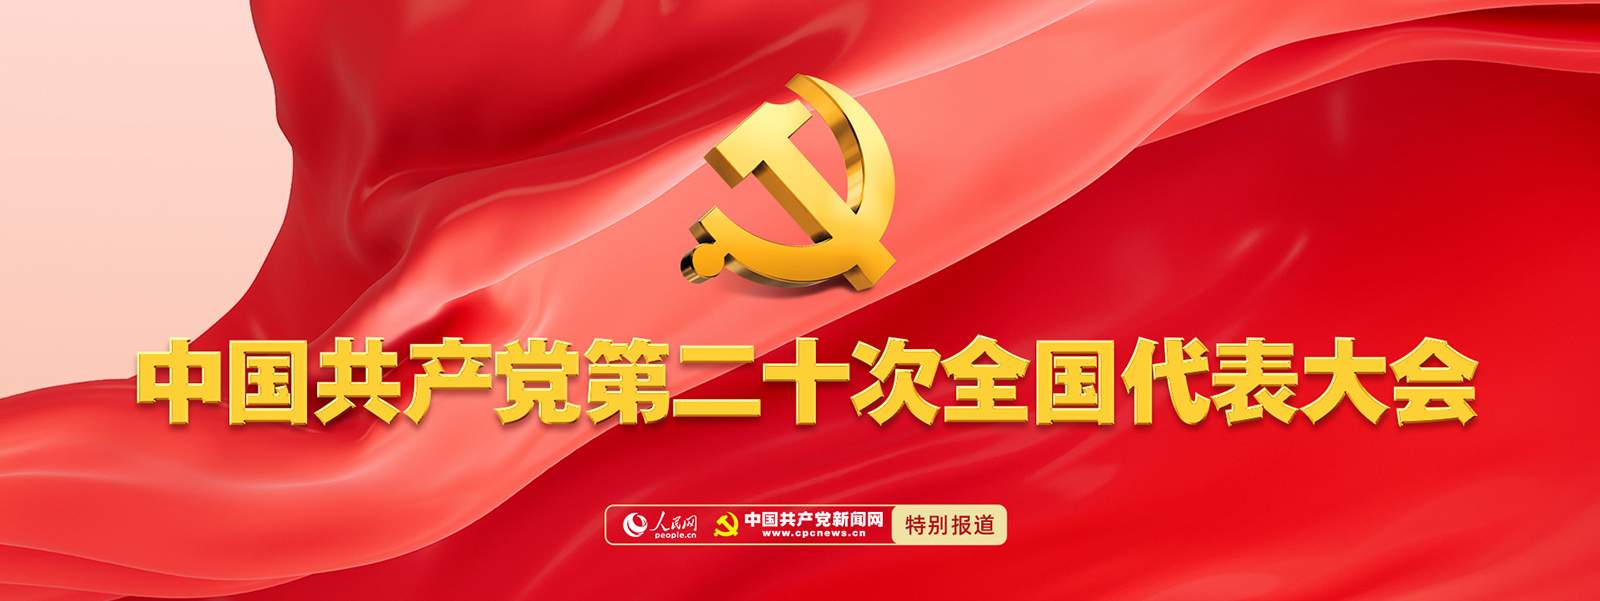 中国共产党第二十次全国代表大会专题报道